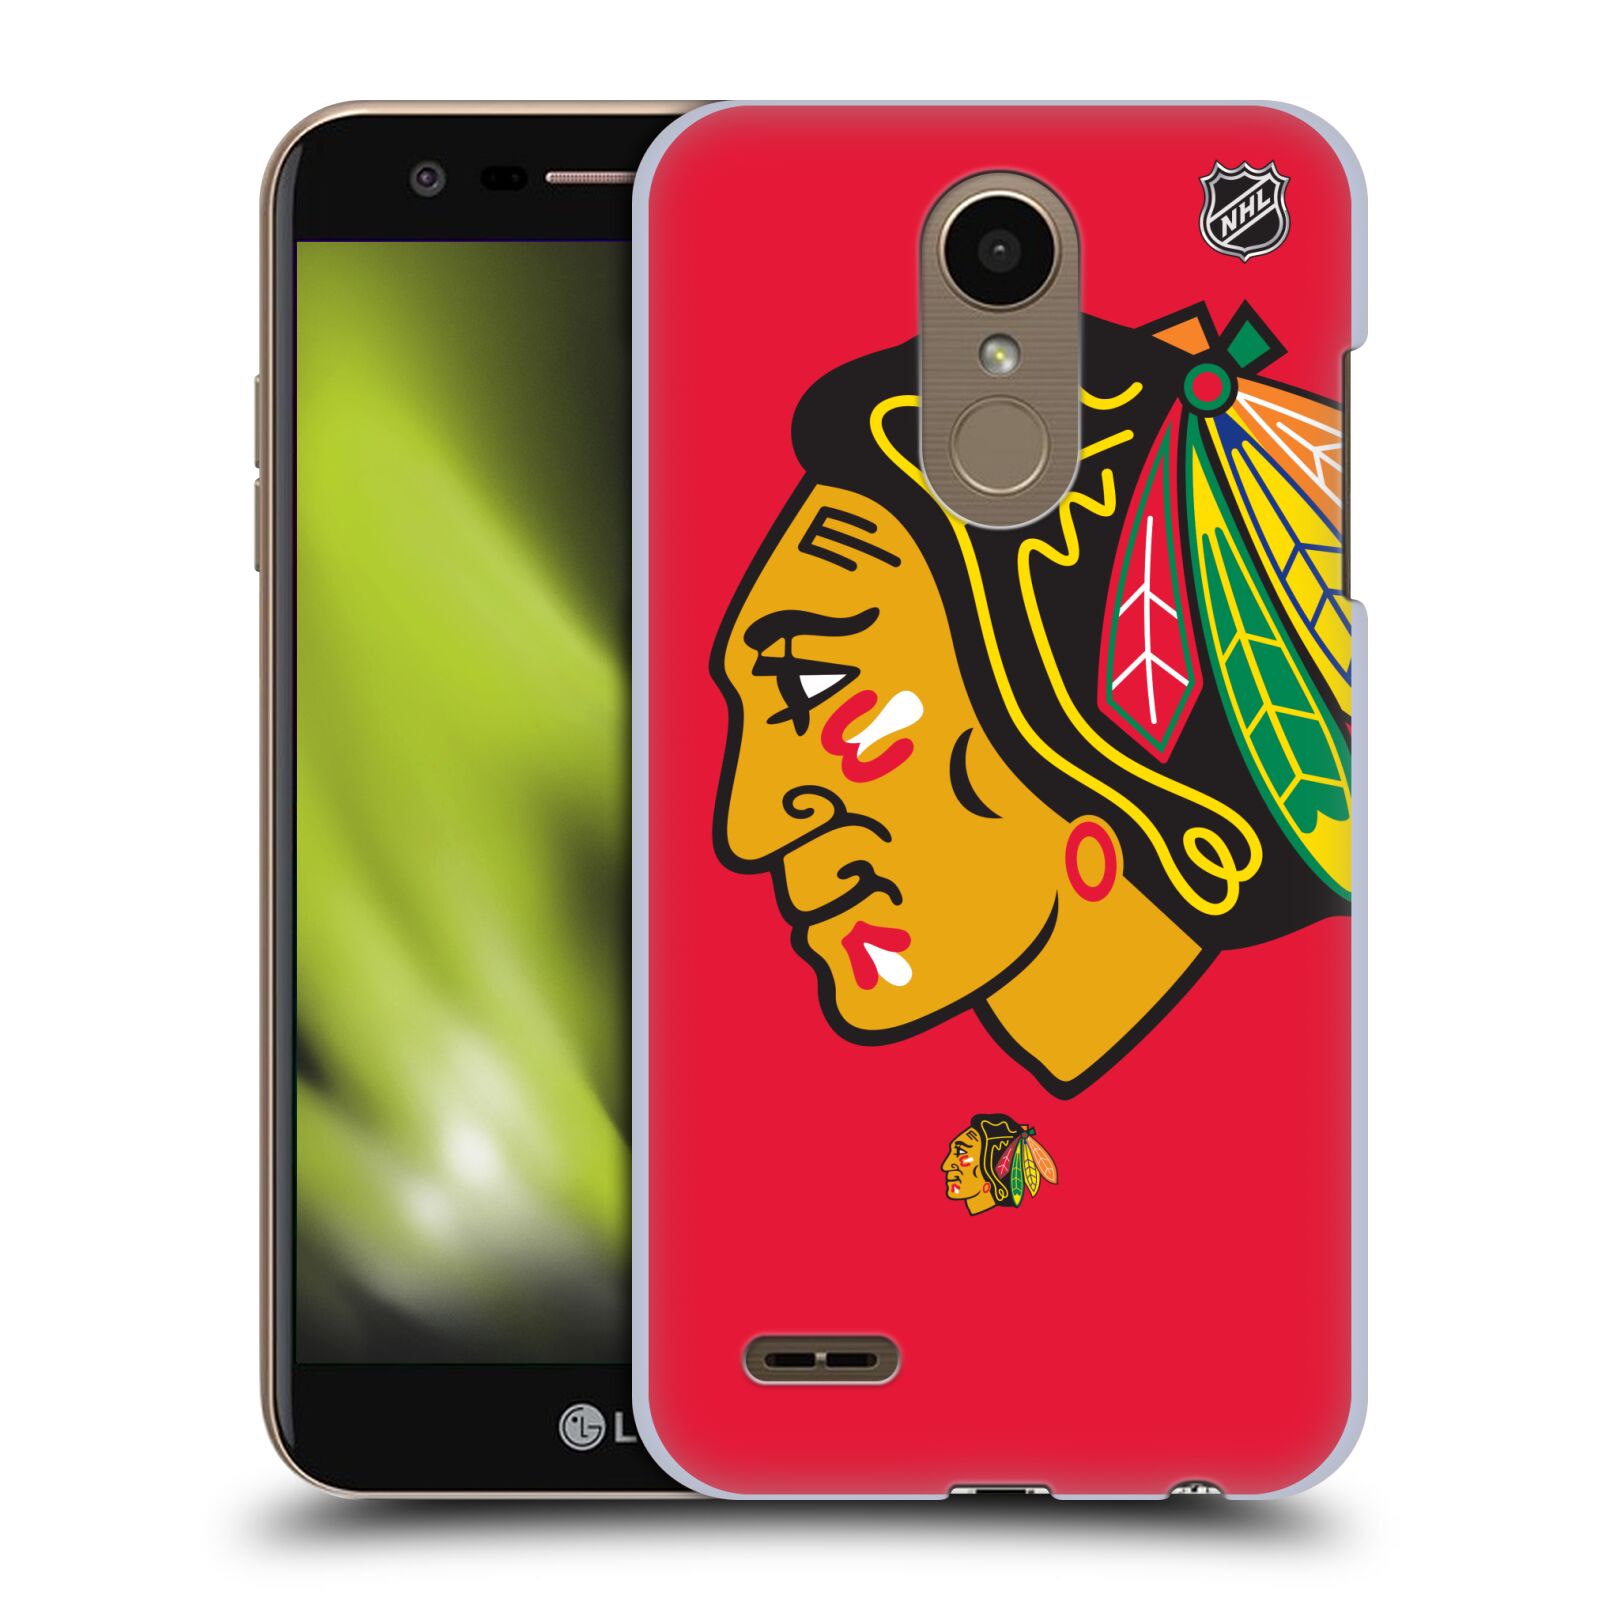 Pouzdro na mobil LG K10 2018 - HEAD CASE - Hokej NHL - Chicago Blackhawks - Velký znak